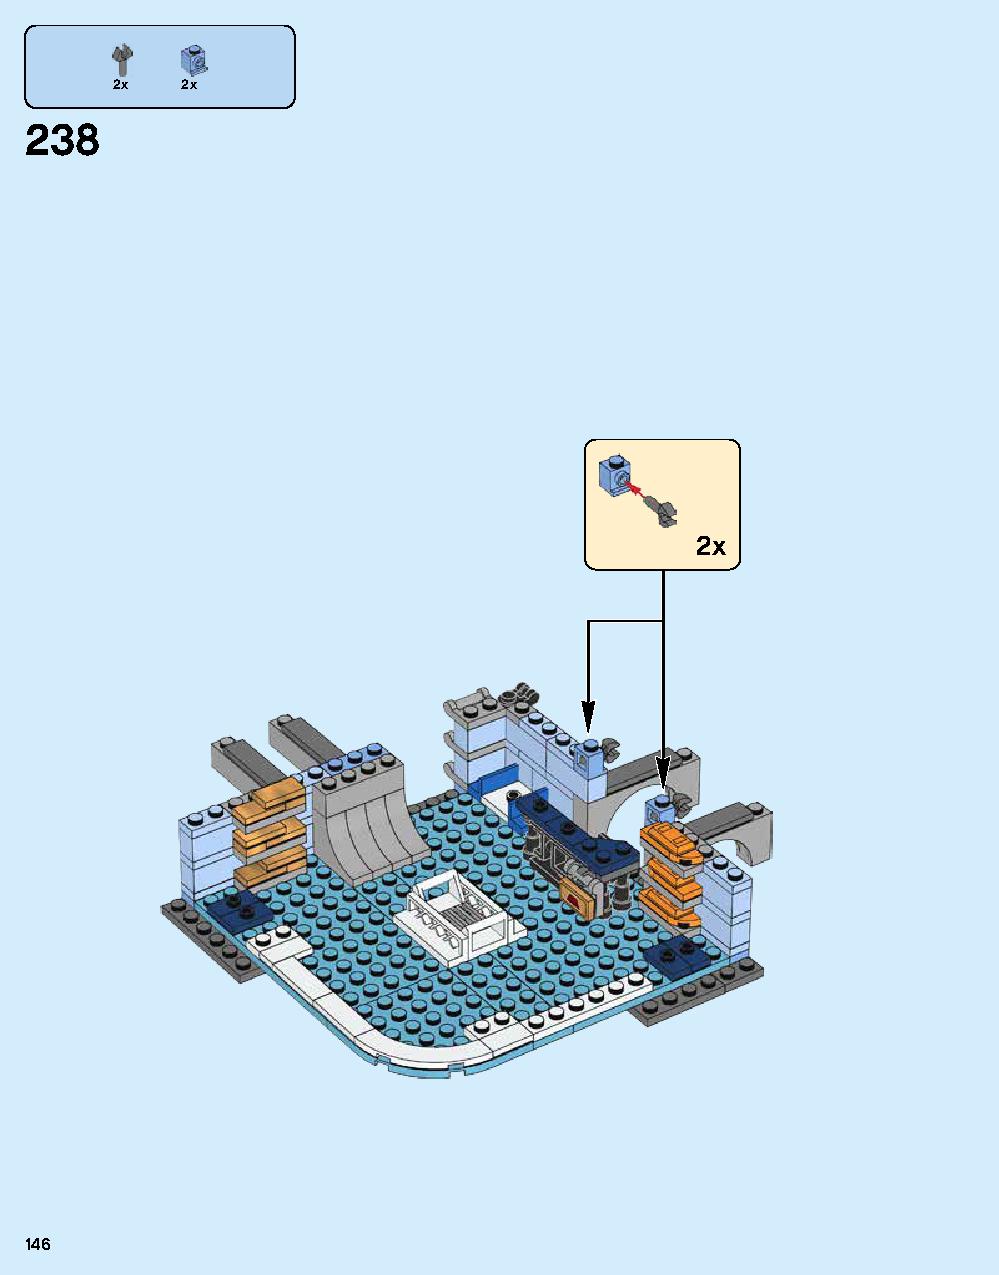 ニンジャゴー シティ 70620 レゴの商品情報 レゴの説明書・組立方法 146 page